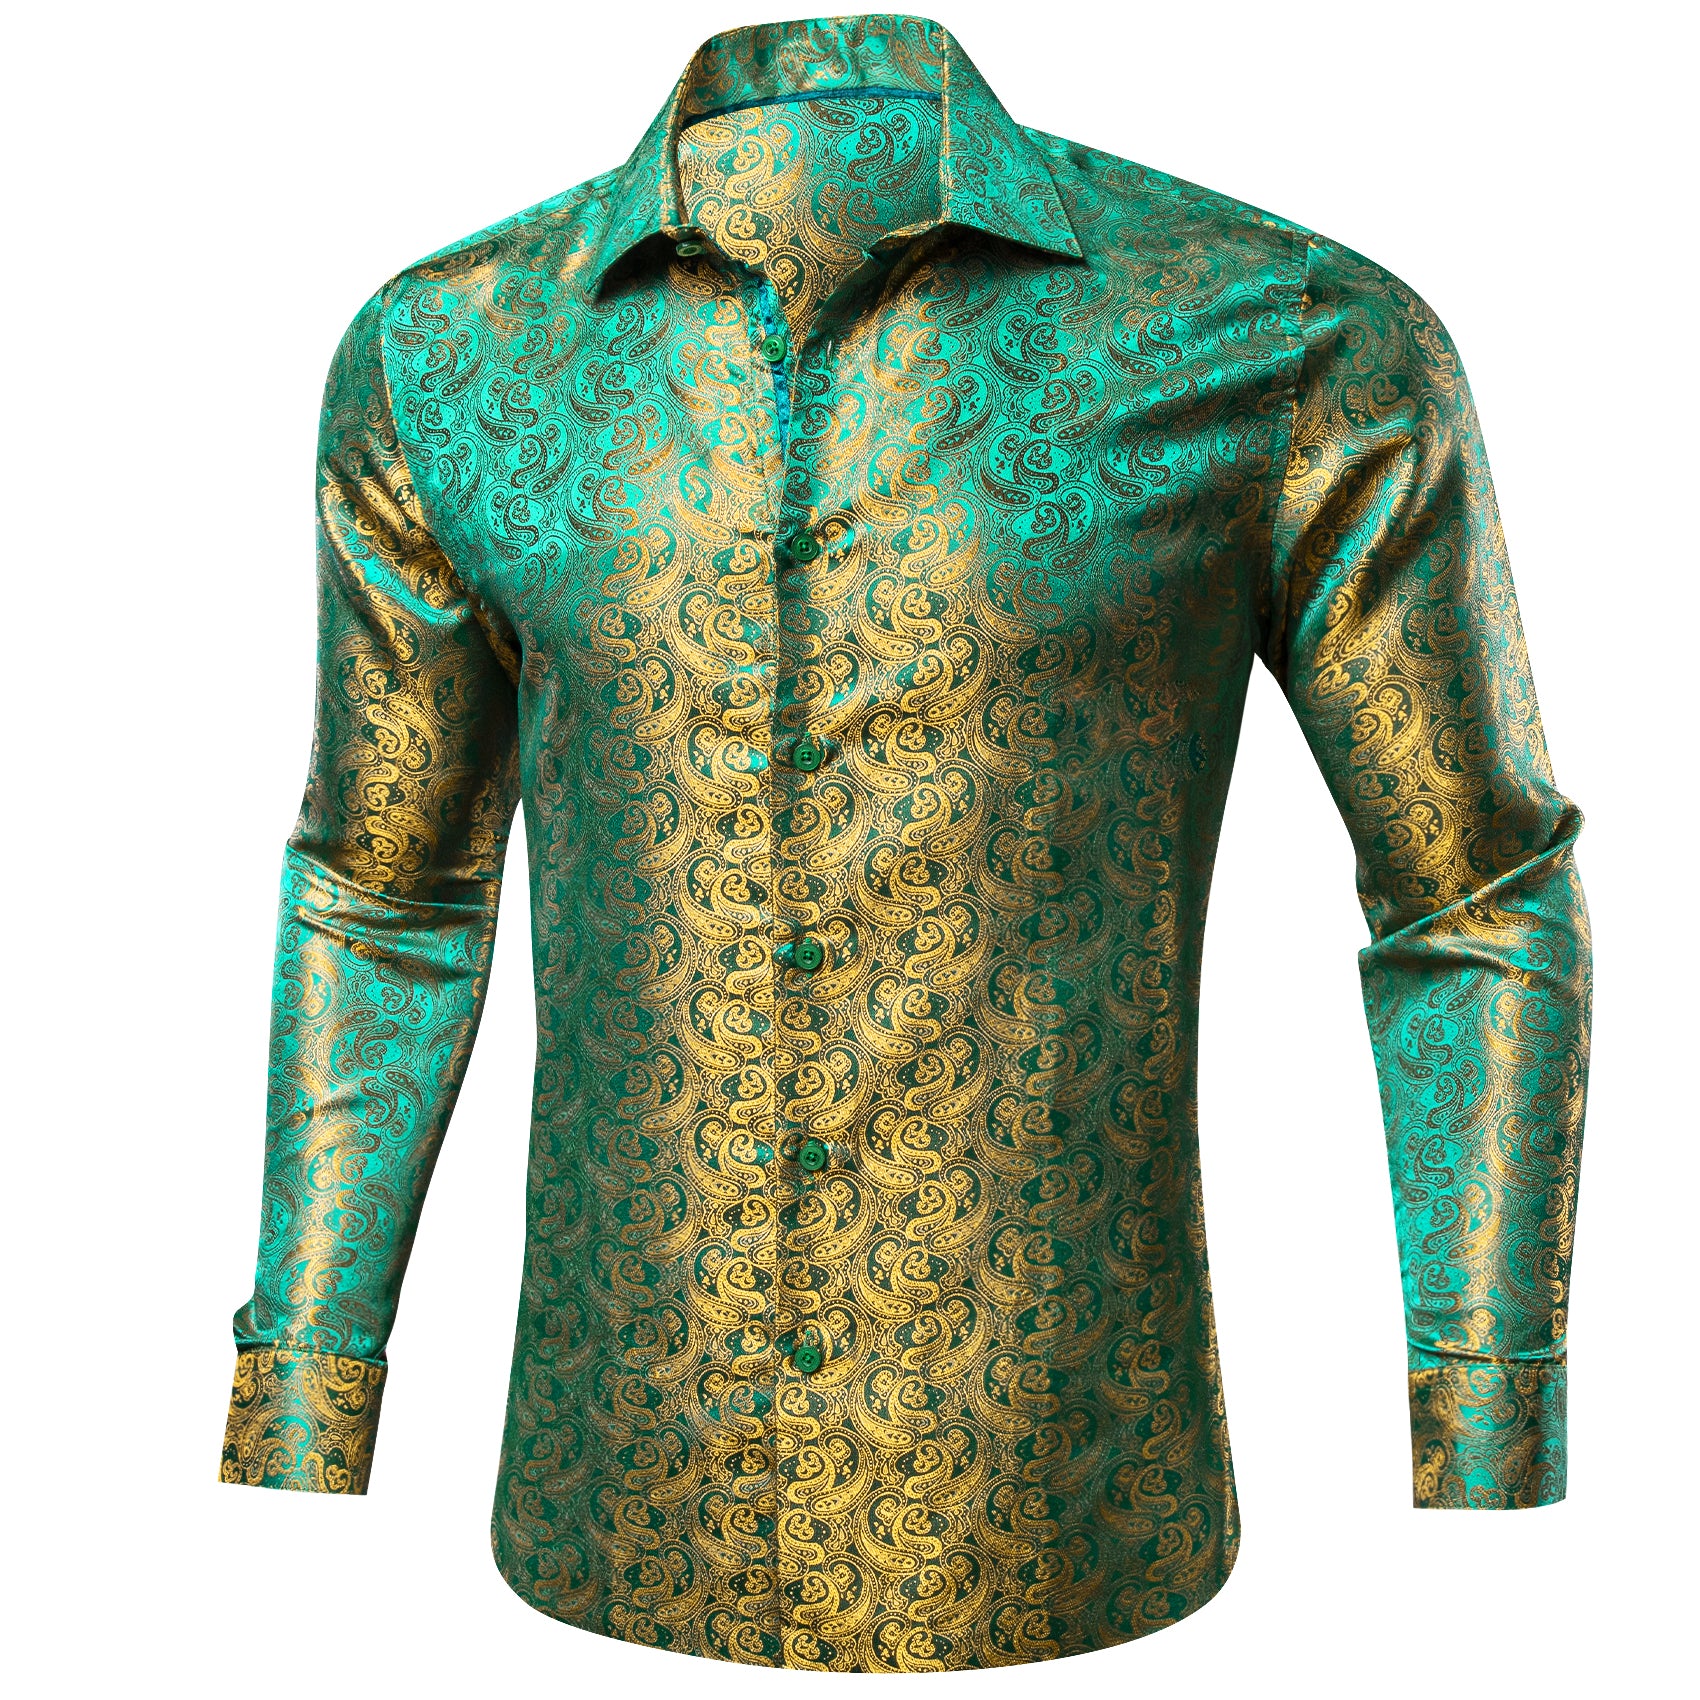 Barry.wang long sleeve Shirt Green Gold Paisley Silk Men's Shirt